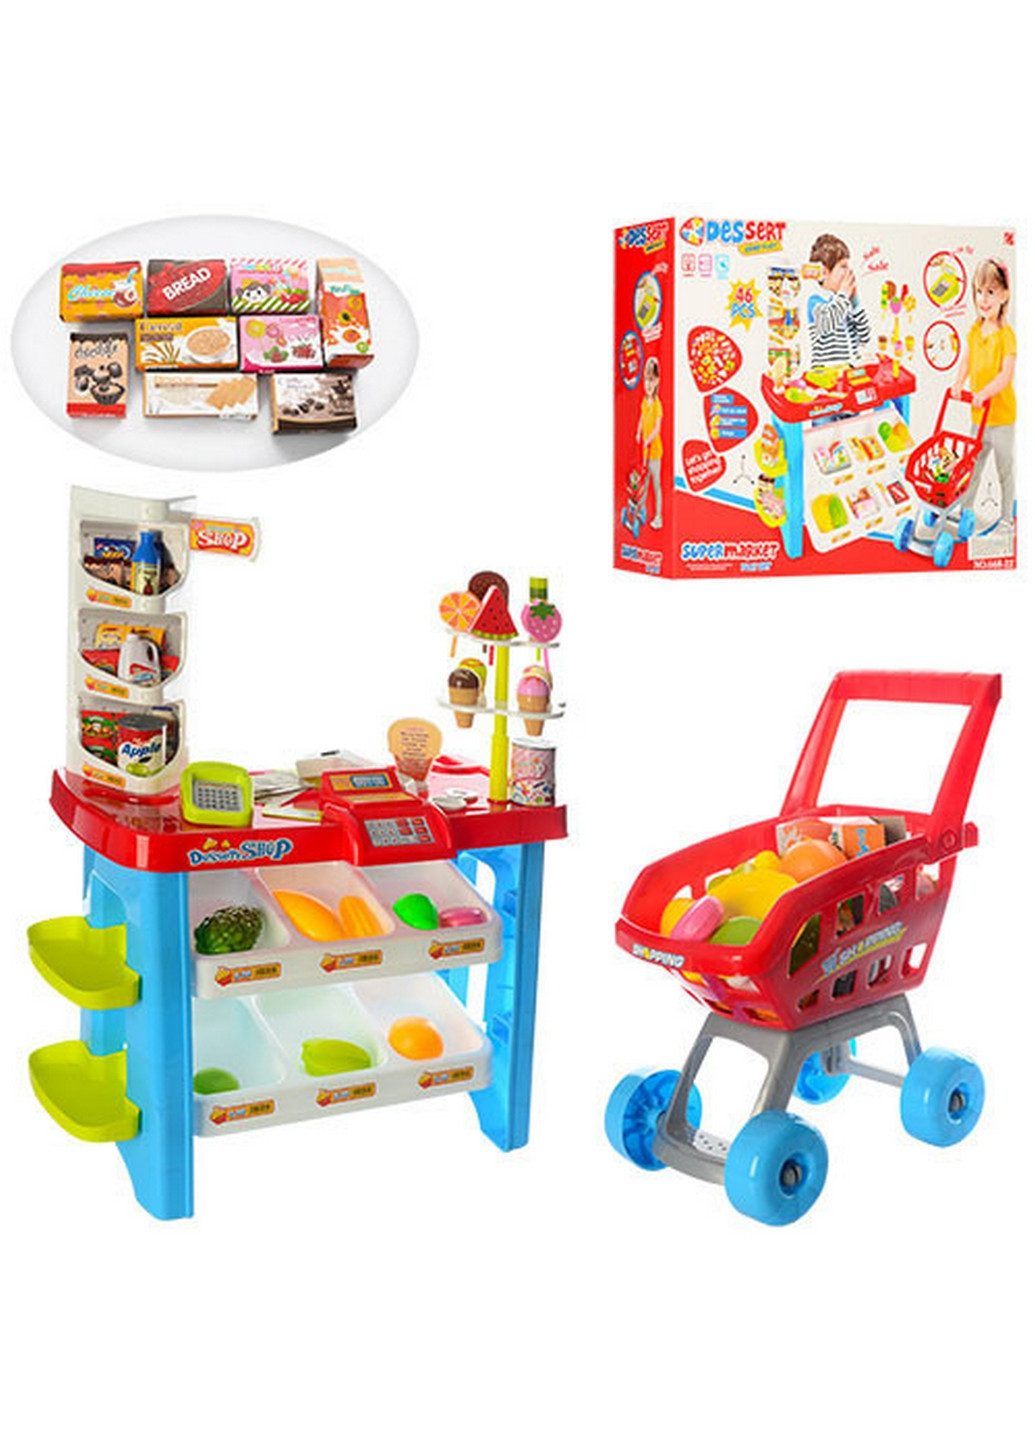 Детский игровой набор магазин с корзинкой продуктов 57х45х17 см Metr+ (260532840)